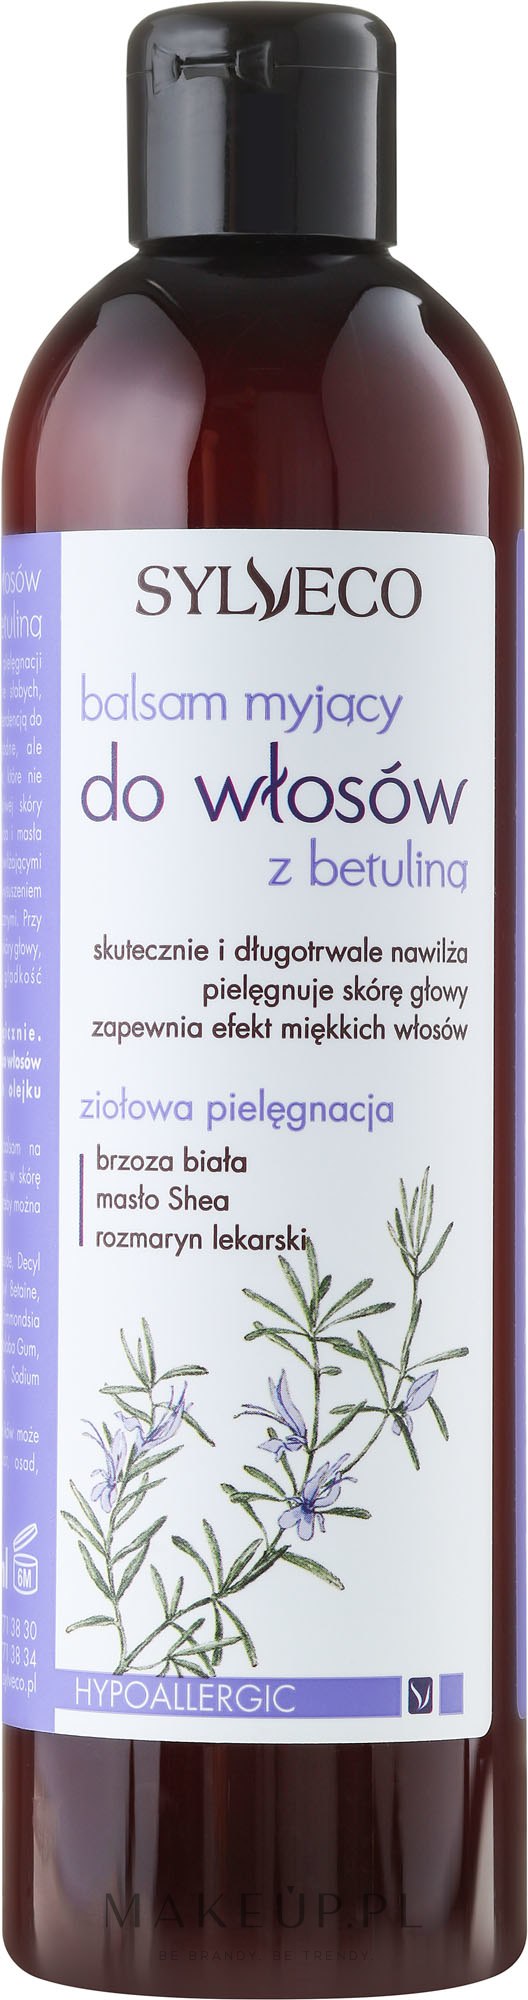 sylveco z betuliną szampon wwwlosy